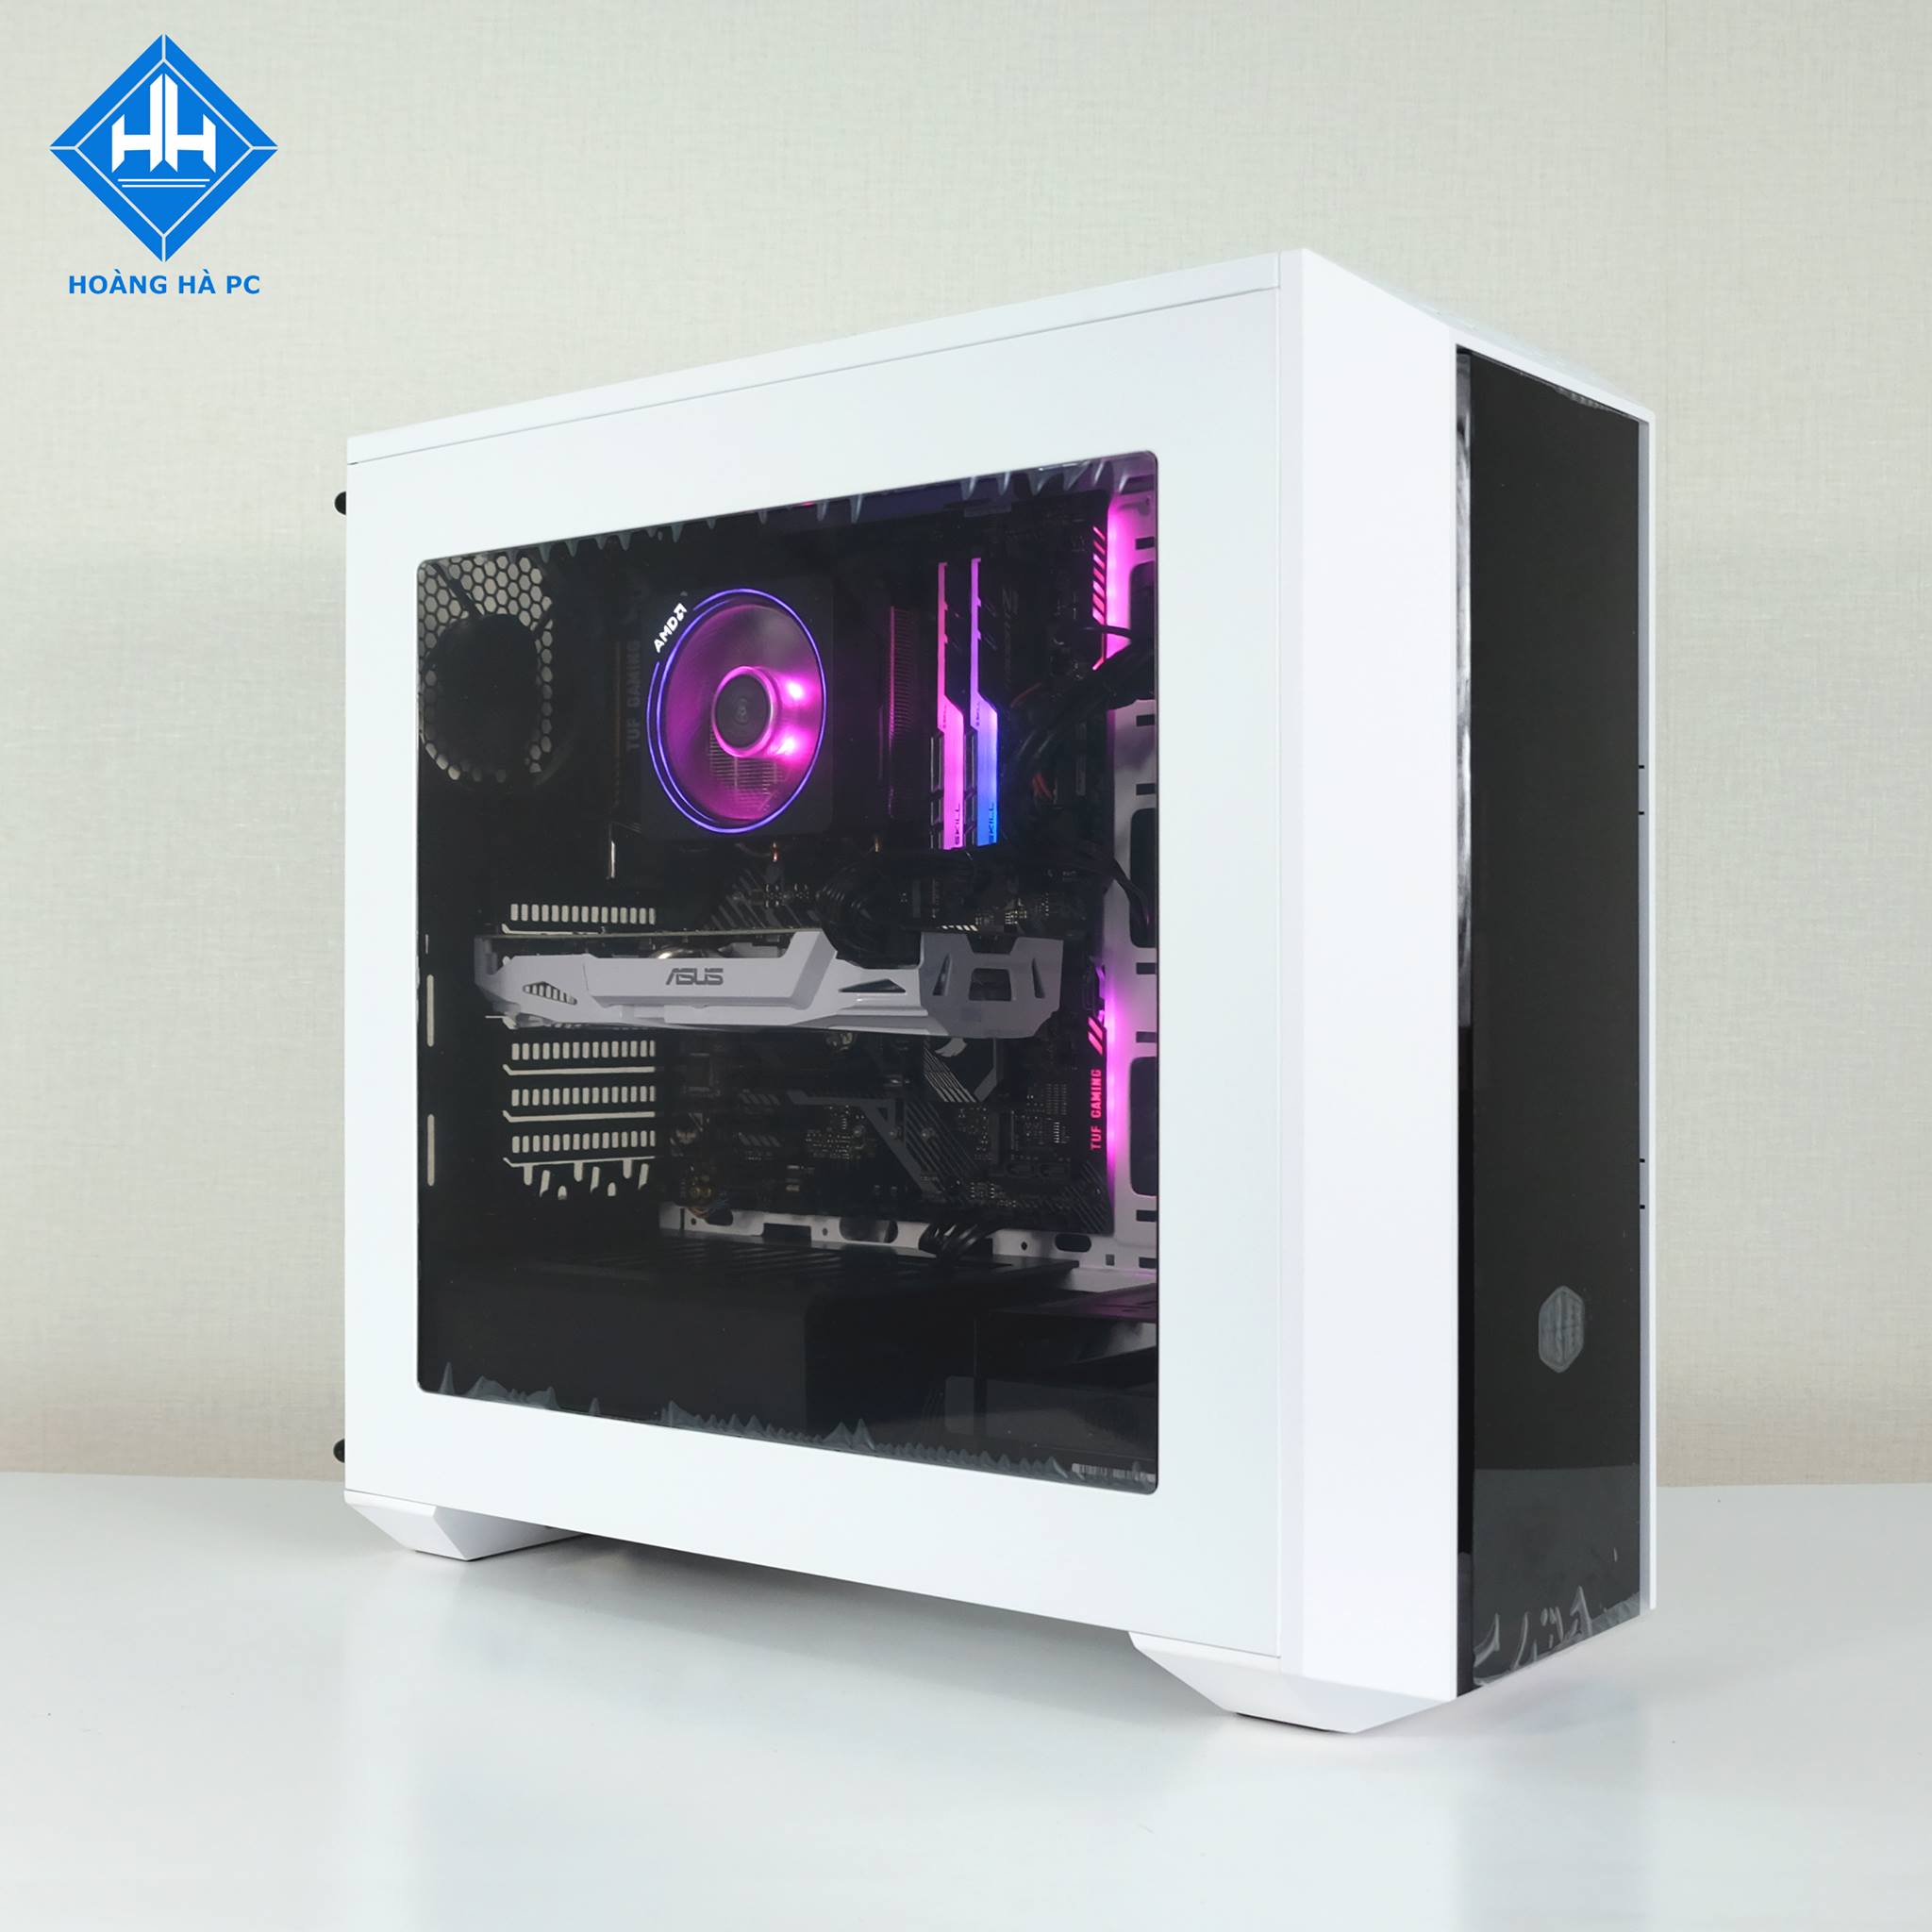 Cấu hình PC Workstation Ryzen 7 2700x kết hợp với vỏ case MasterBox White đẹp mê ly